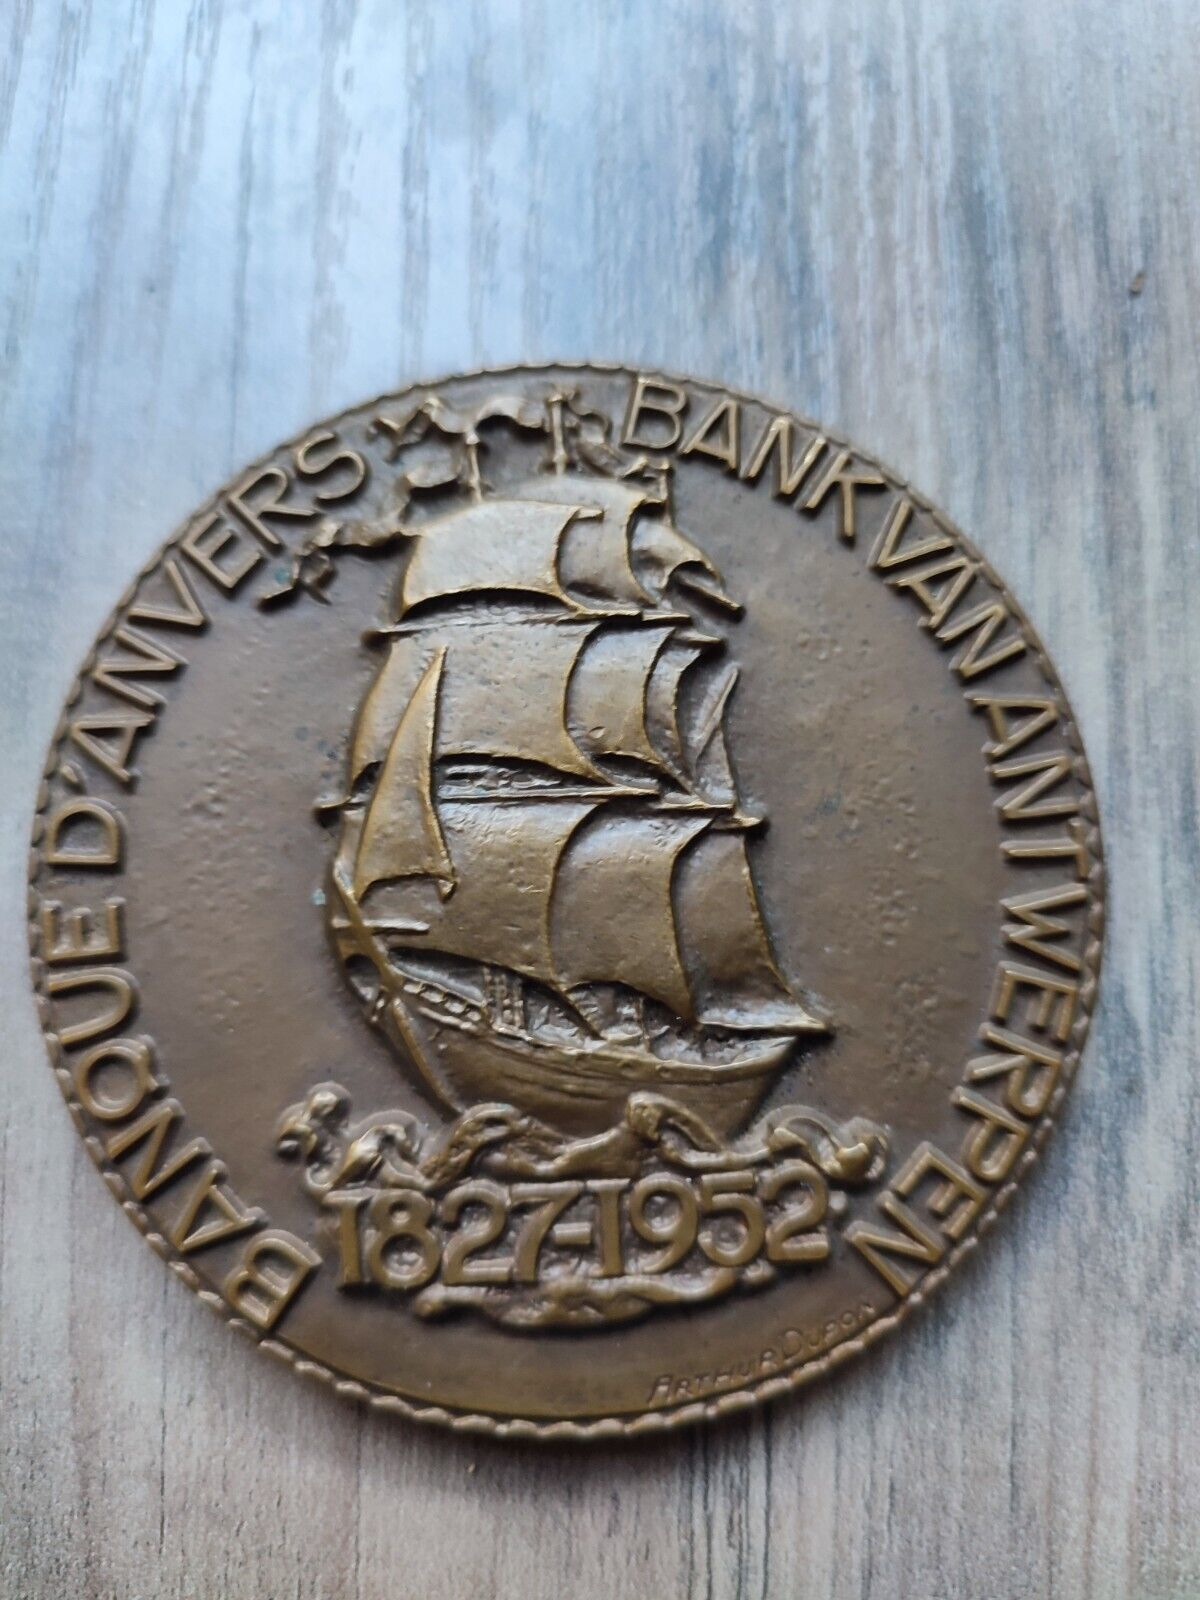 Antwerp Bank Antwerp Numismatic Medal